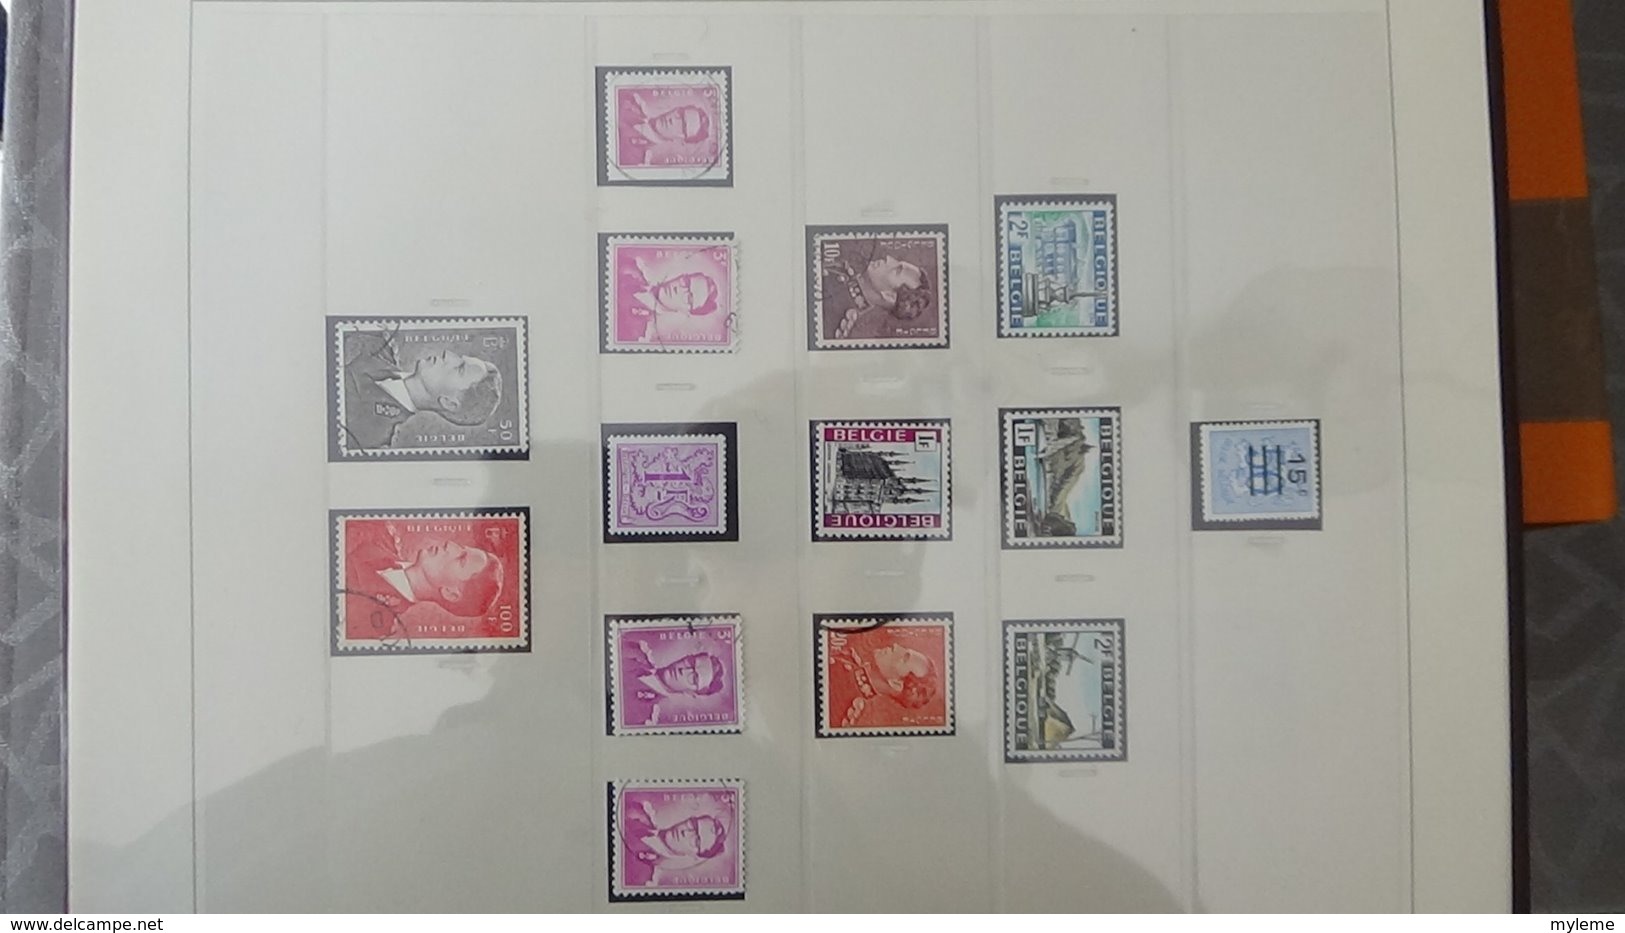 Collection timbres de BELGIQUE Idéal pour thématiques A saisir !!!